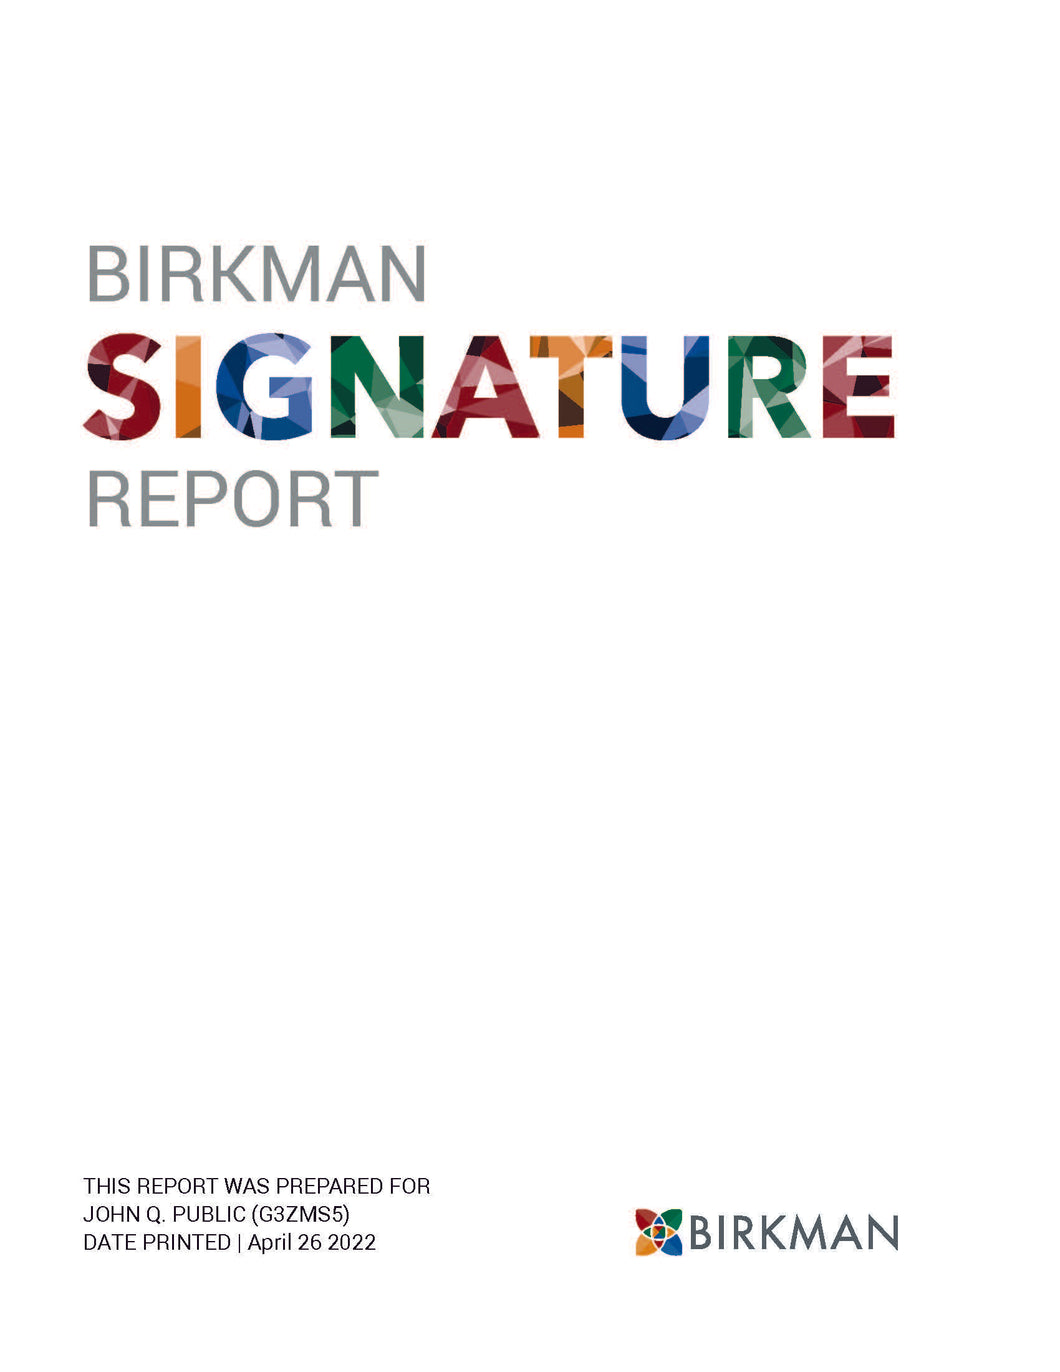 Birkman Report Walmart